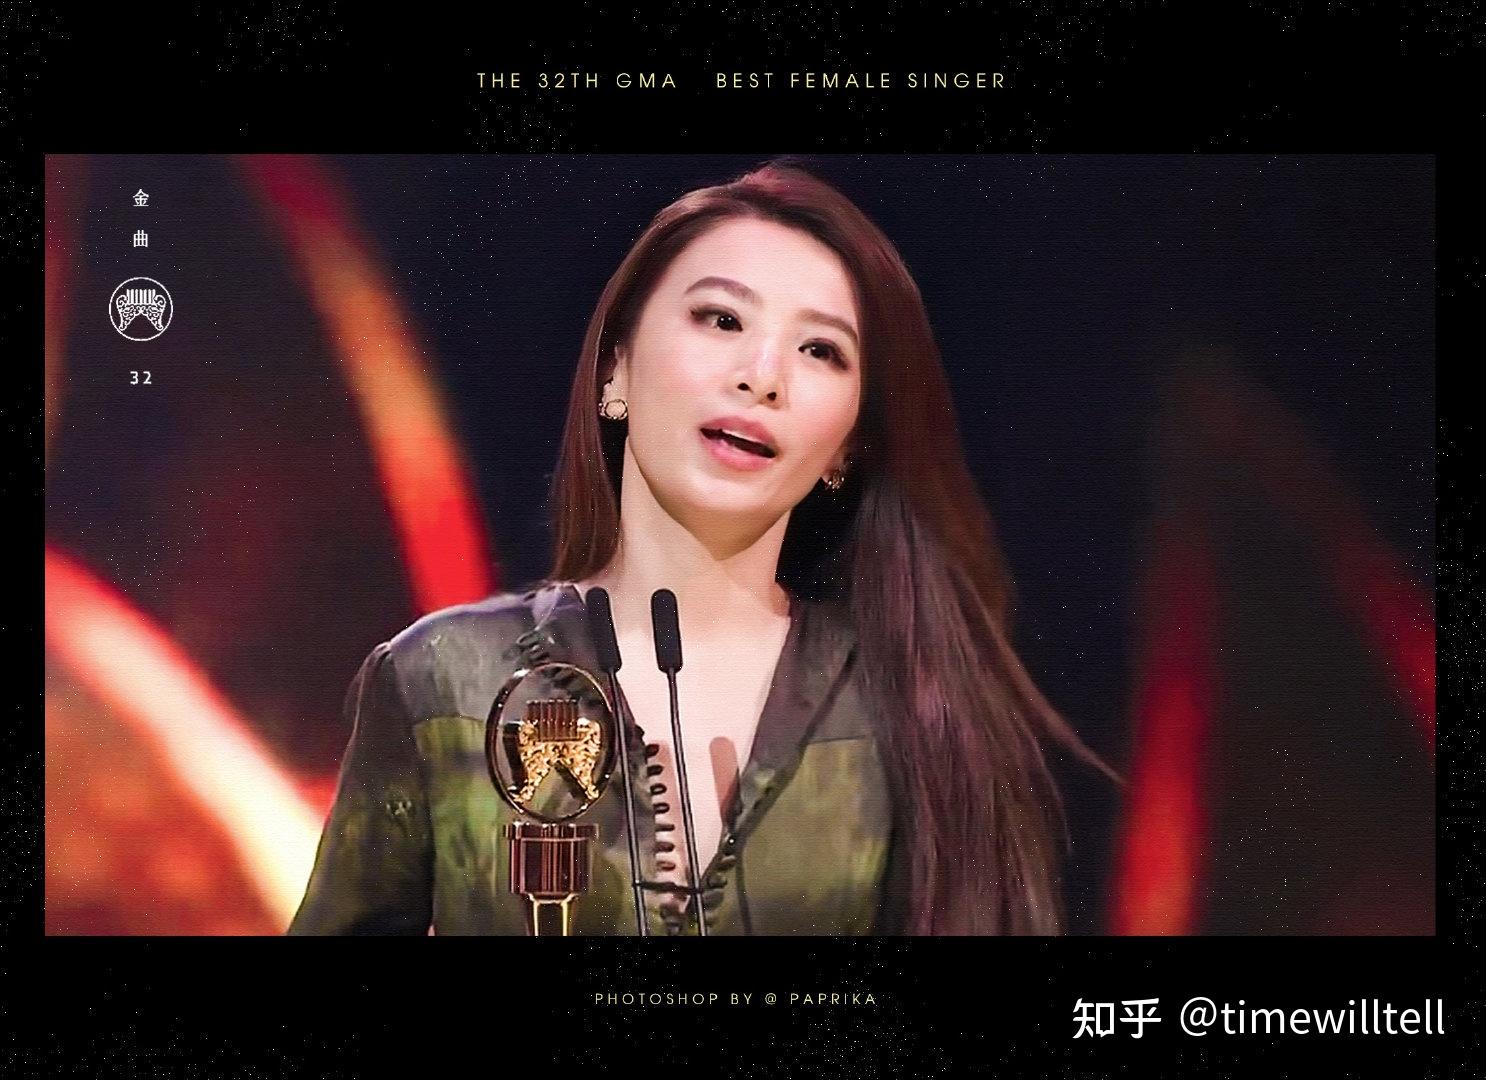 田馥甄终于在2021拿下金曲奖最佳女歌手奖如何评价她目前的成绩你有